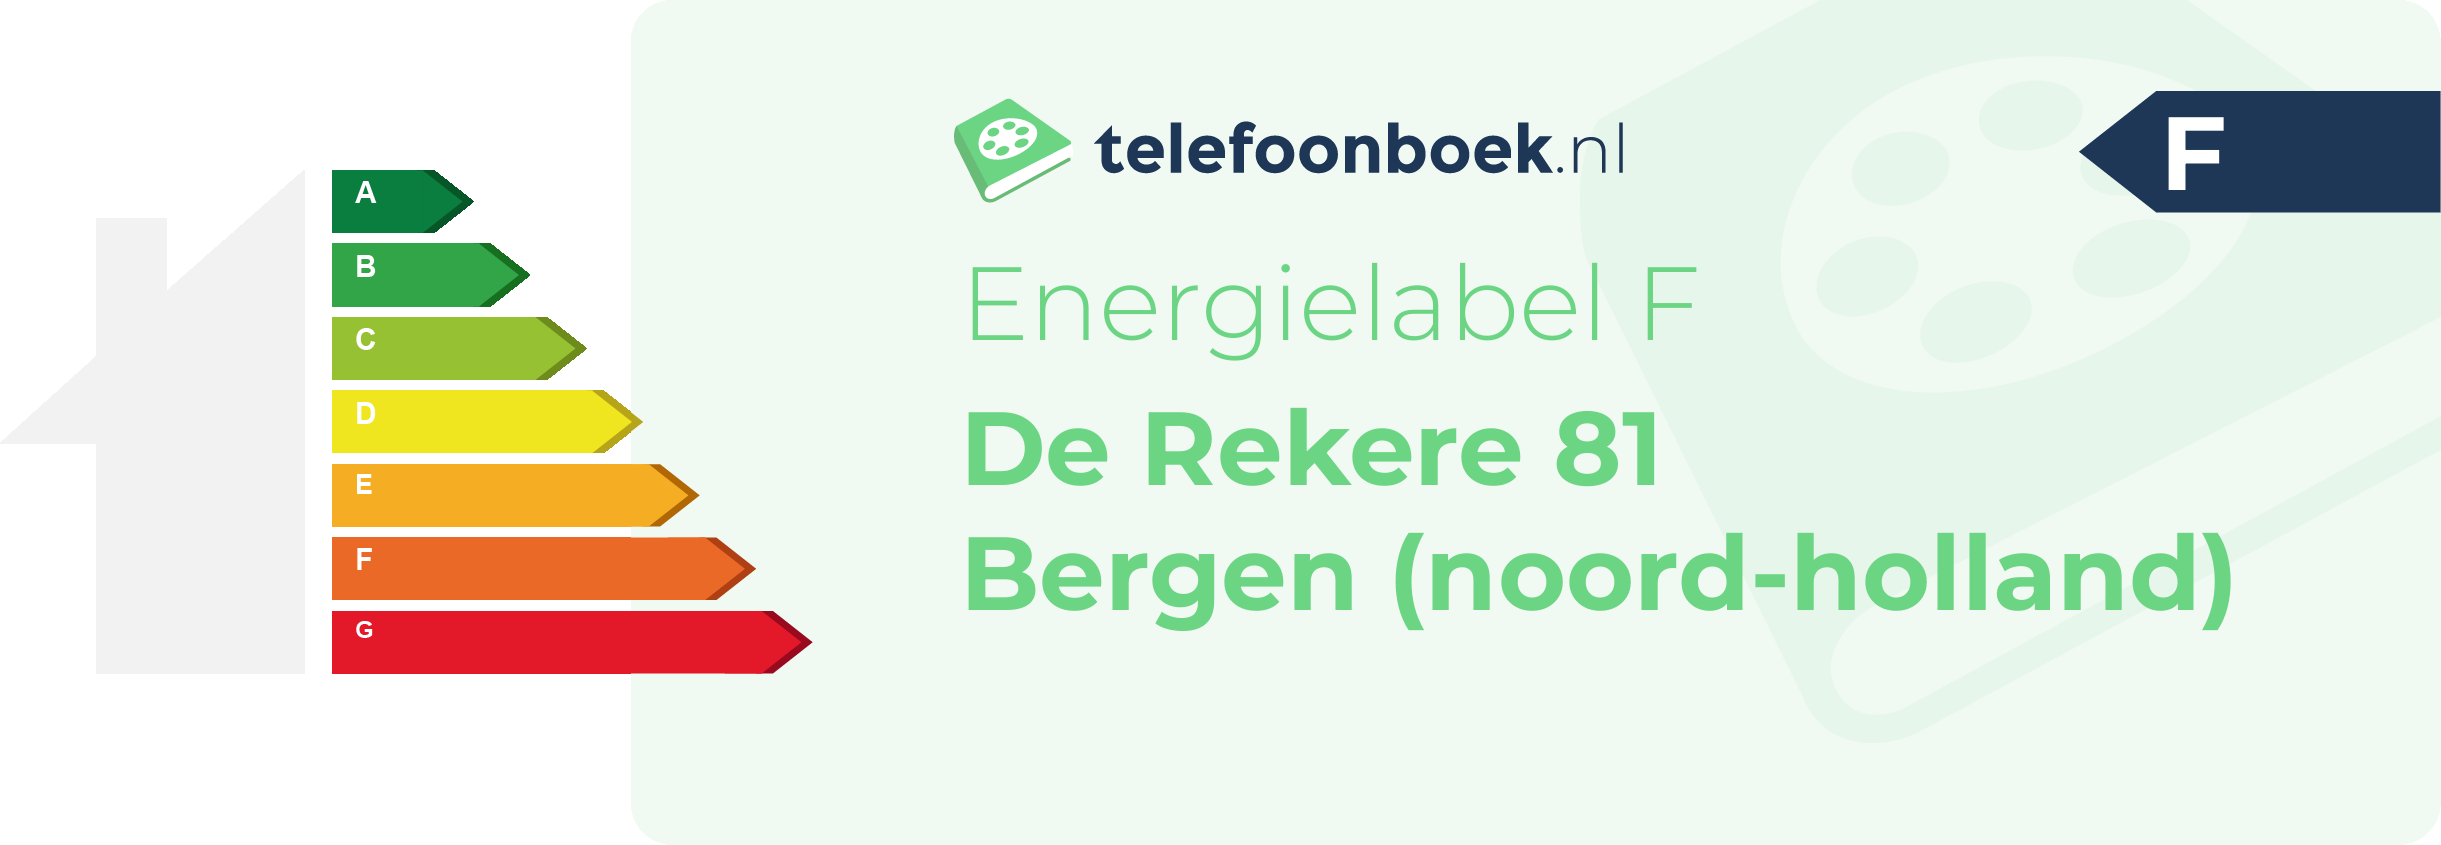 Energielabel De Rekere 81 Bergen (Noord-Holland)